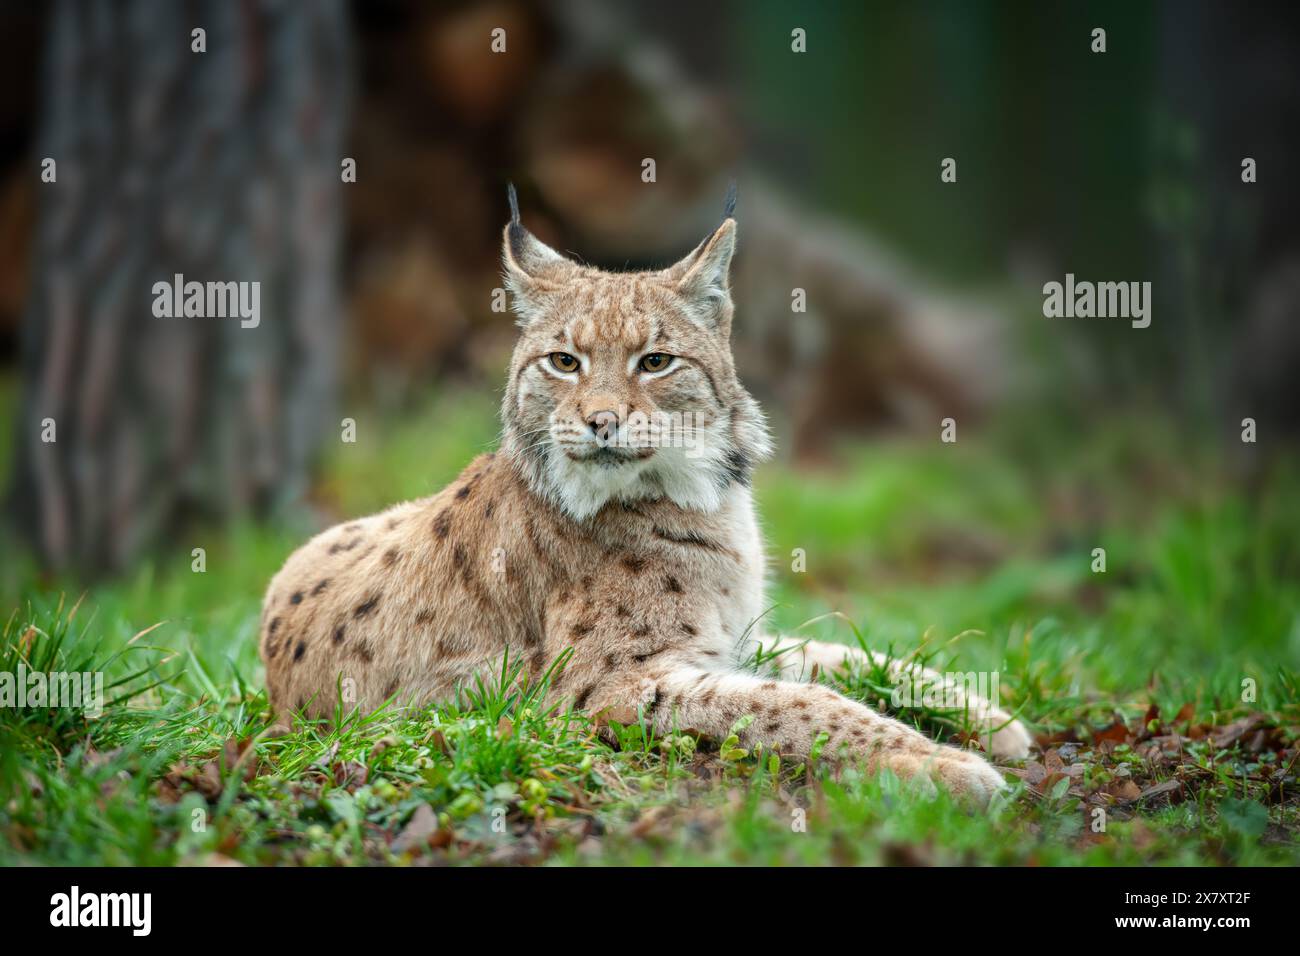 Ein Luchs, eine mittelgroße Wildkatze mit spitzen Ohren und Fell, sitzt im Gras im Wald. Der Luchs sucht in seinem natura nach potenziellen Beute oder Bedrohungen Stockfoto